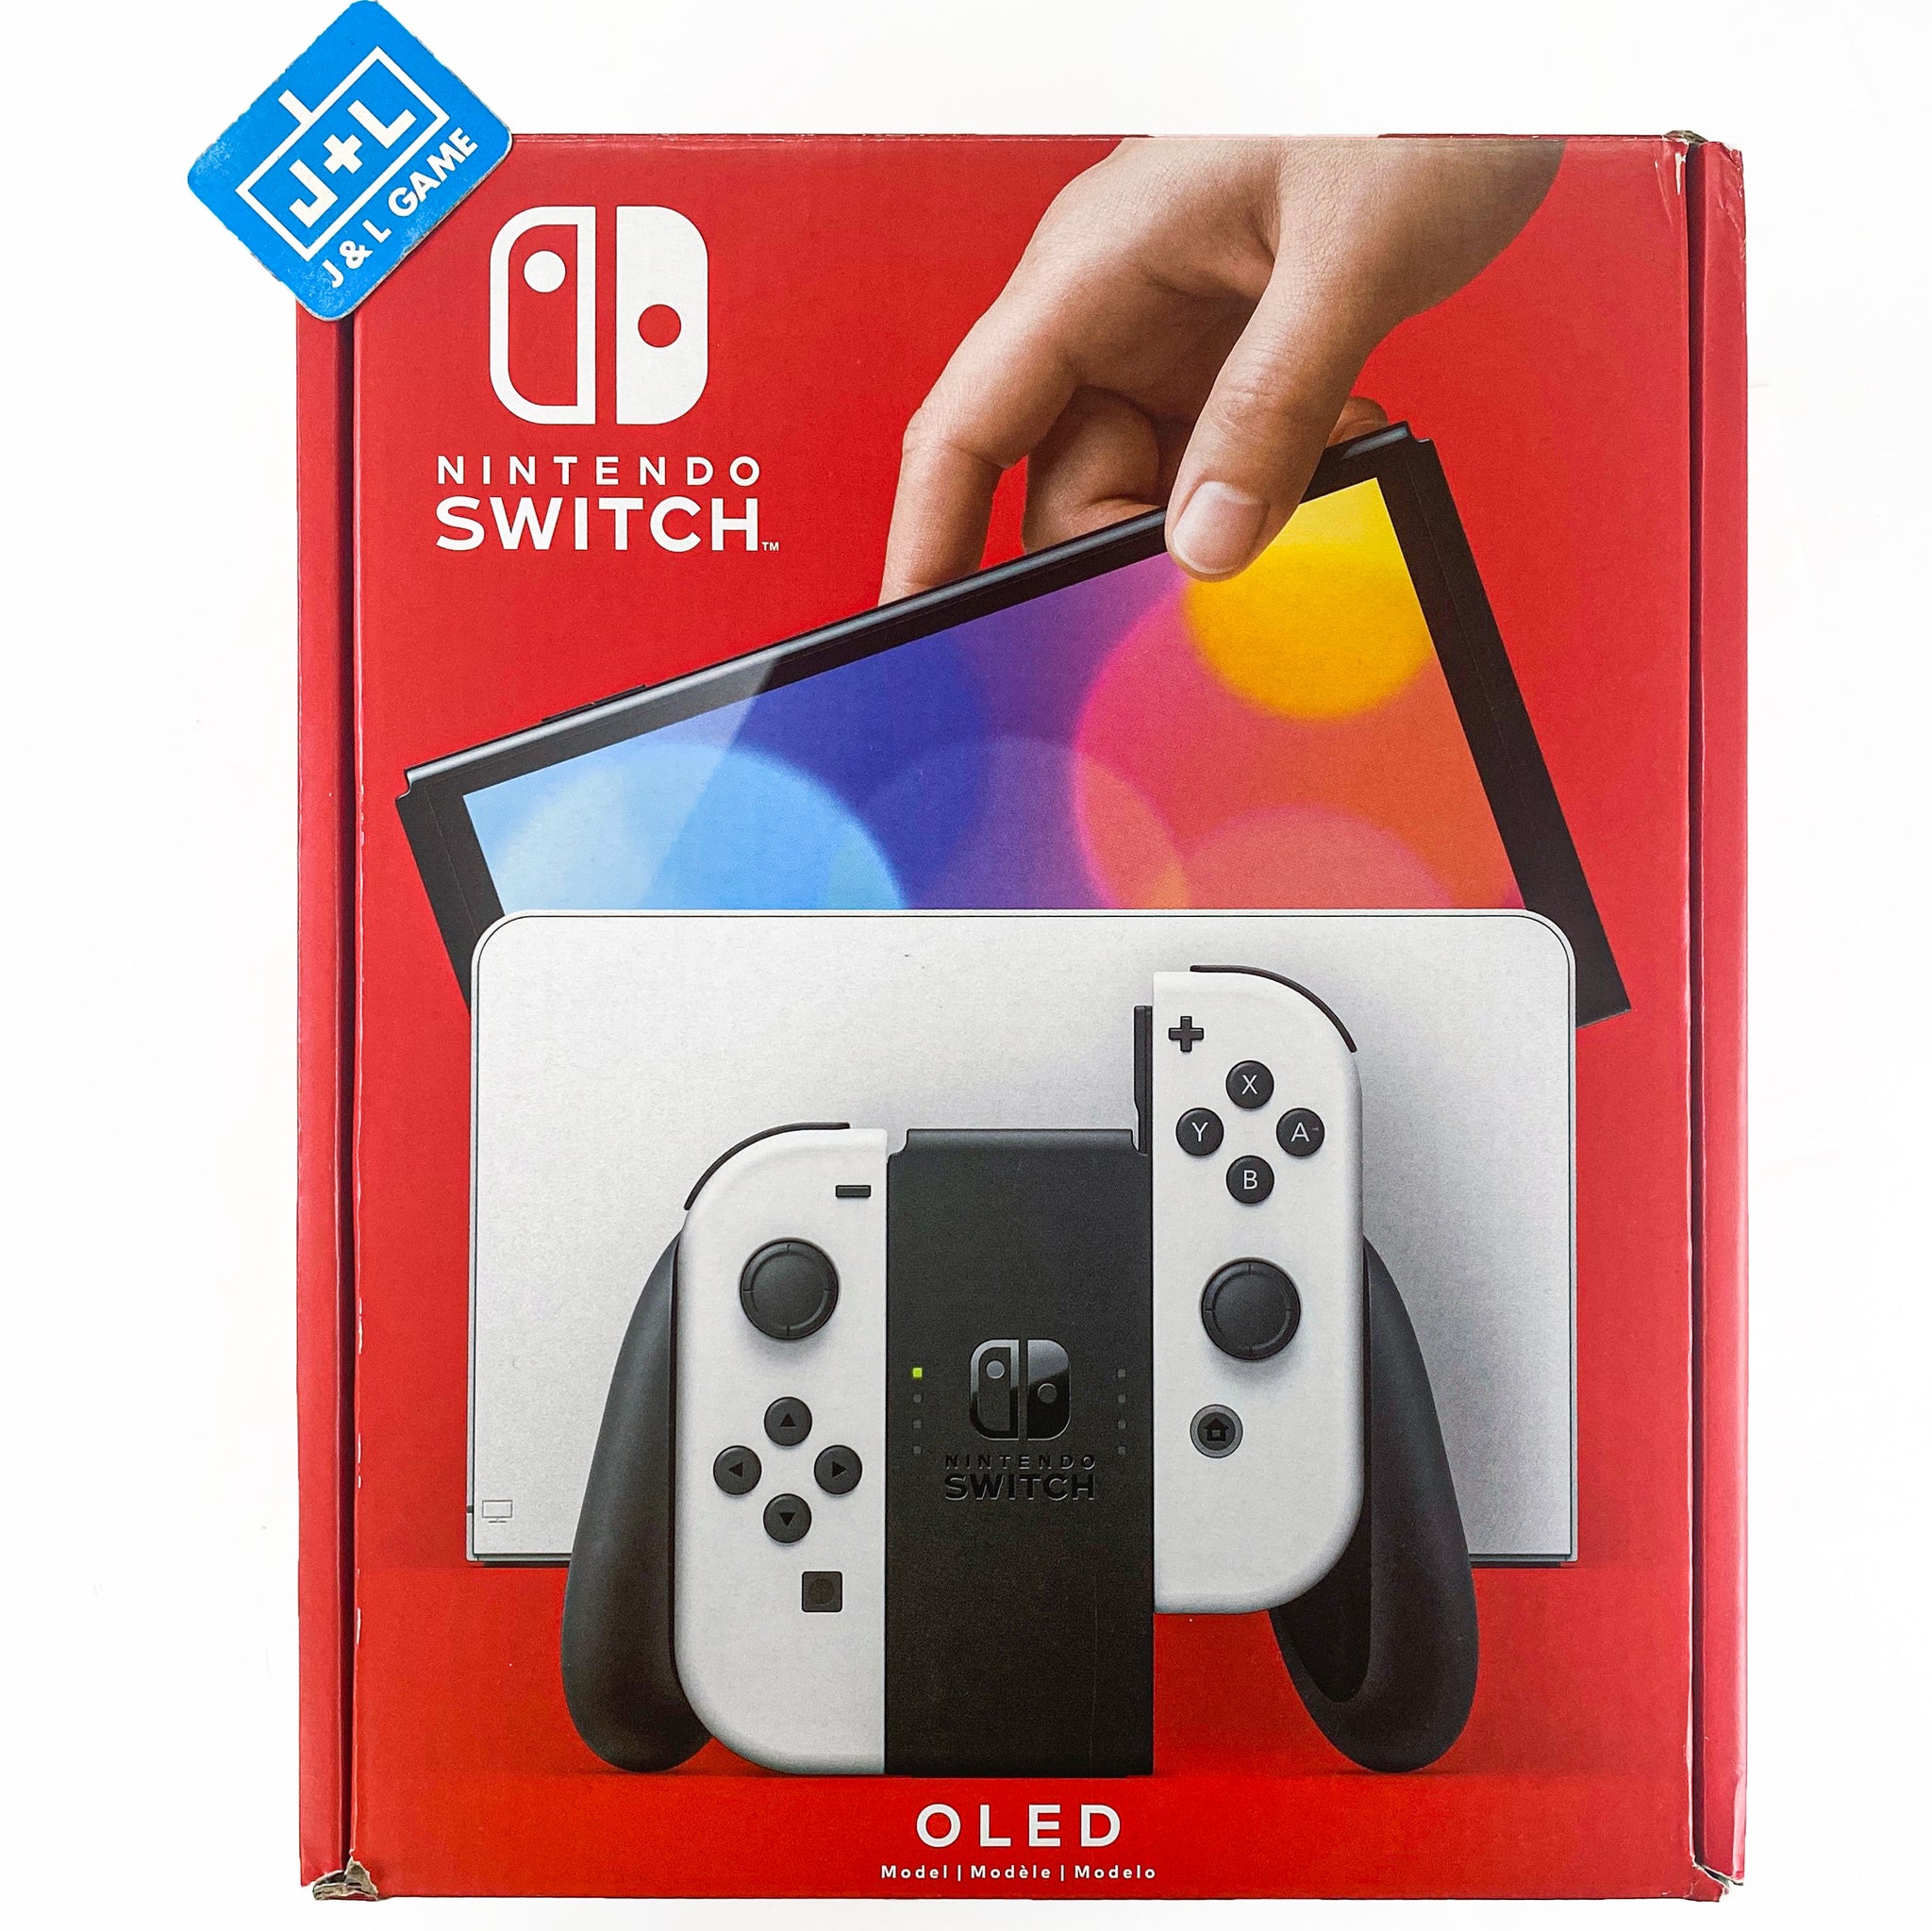 Nintendo Switch – OLED (Sw Oled) Model w/ White Joy-Con Bundle